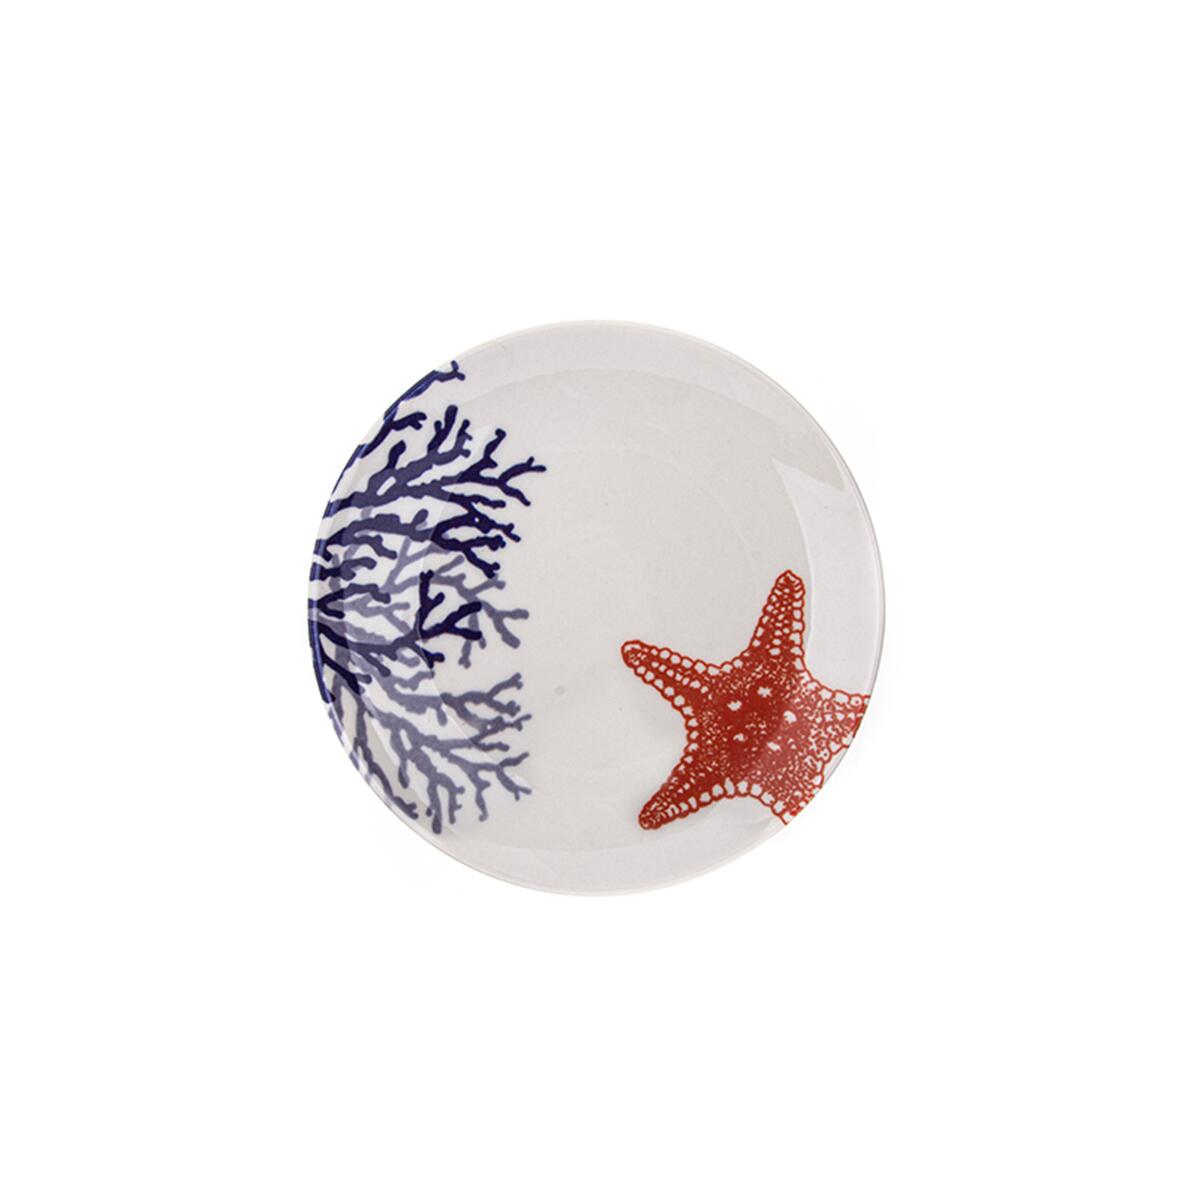 Aryıldız Marine Starfish Flat Plate 25cm